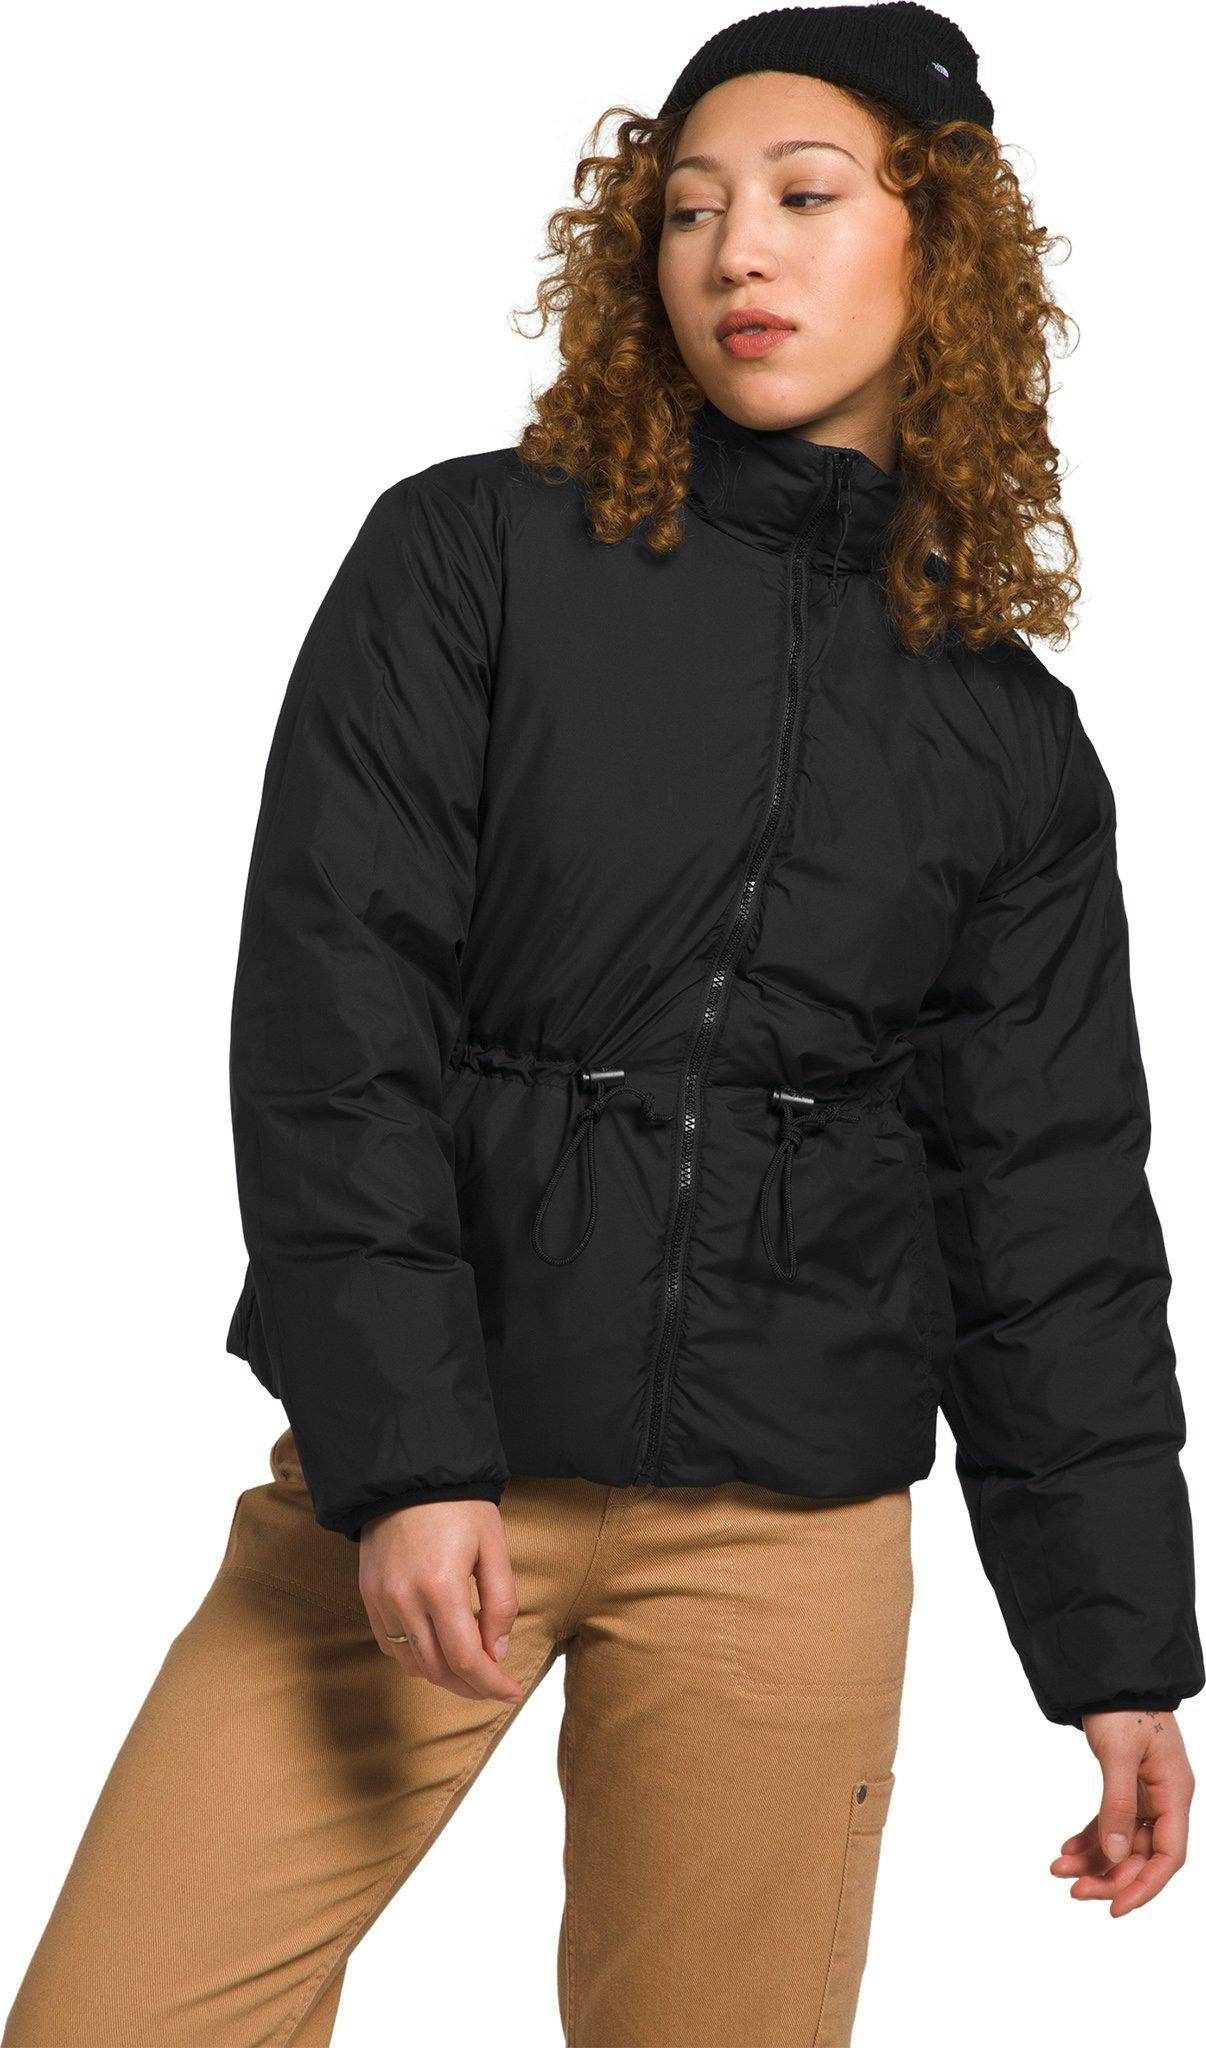 Product image for Lhotse Reversible Jacket - Women's